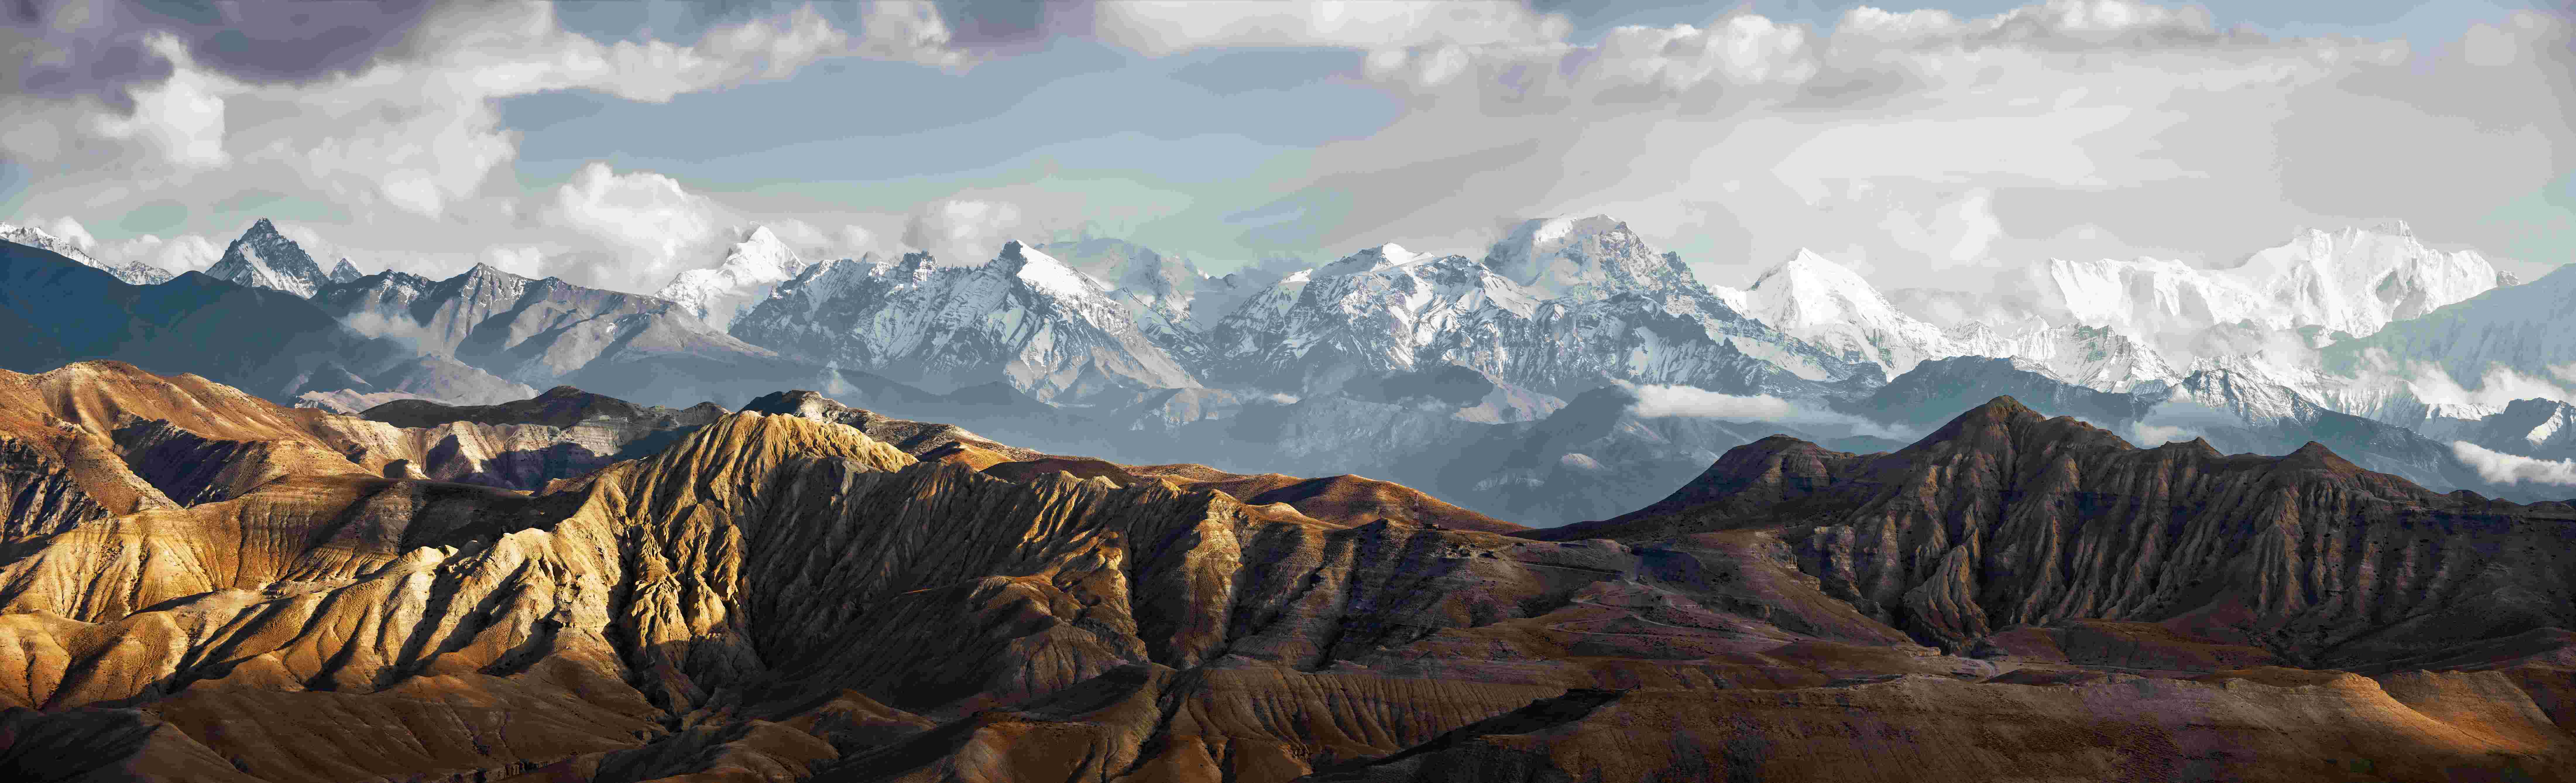 Panorama sur les montagnes de l'Annapurna.